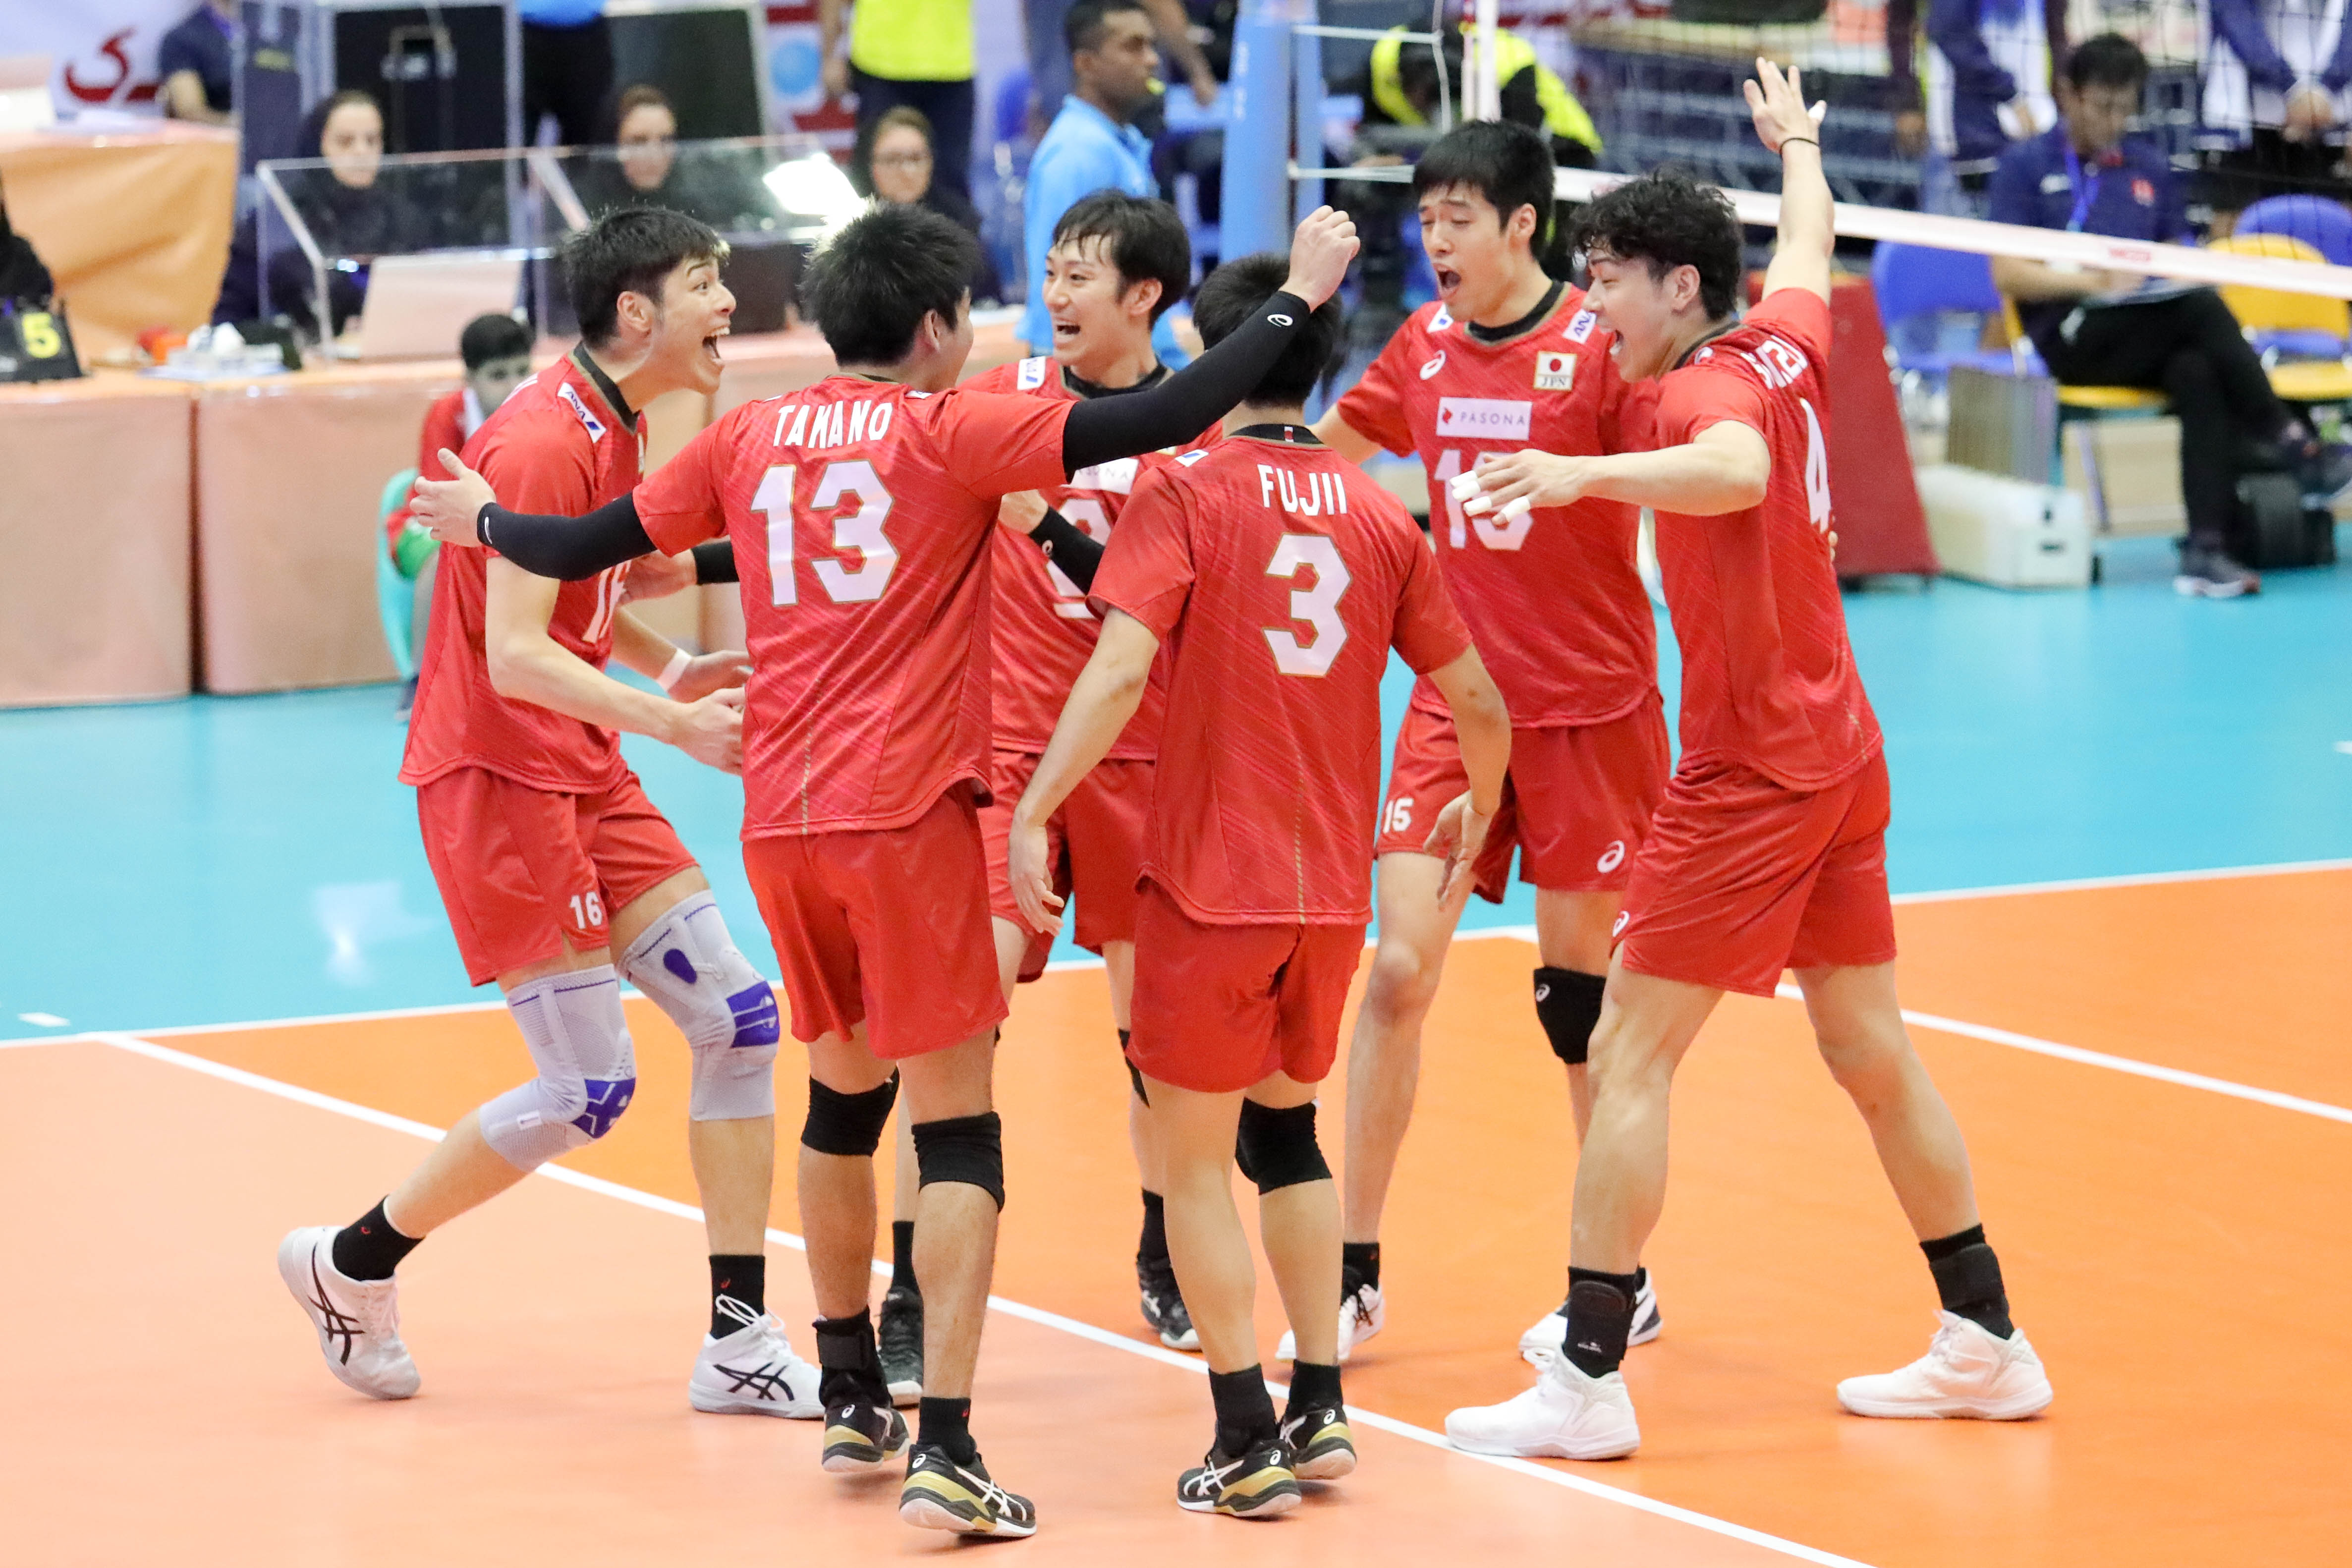 JAPAN BAG FIRST WIN AT ASIAN SR MEN’S CHAMPIONSHIP AFTER 3-0 ROUT OF HONG KONG CHINA